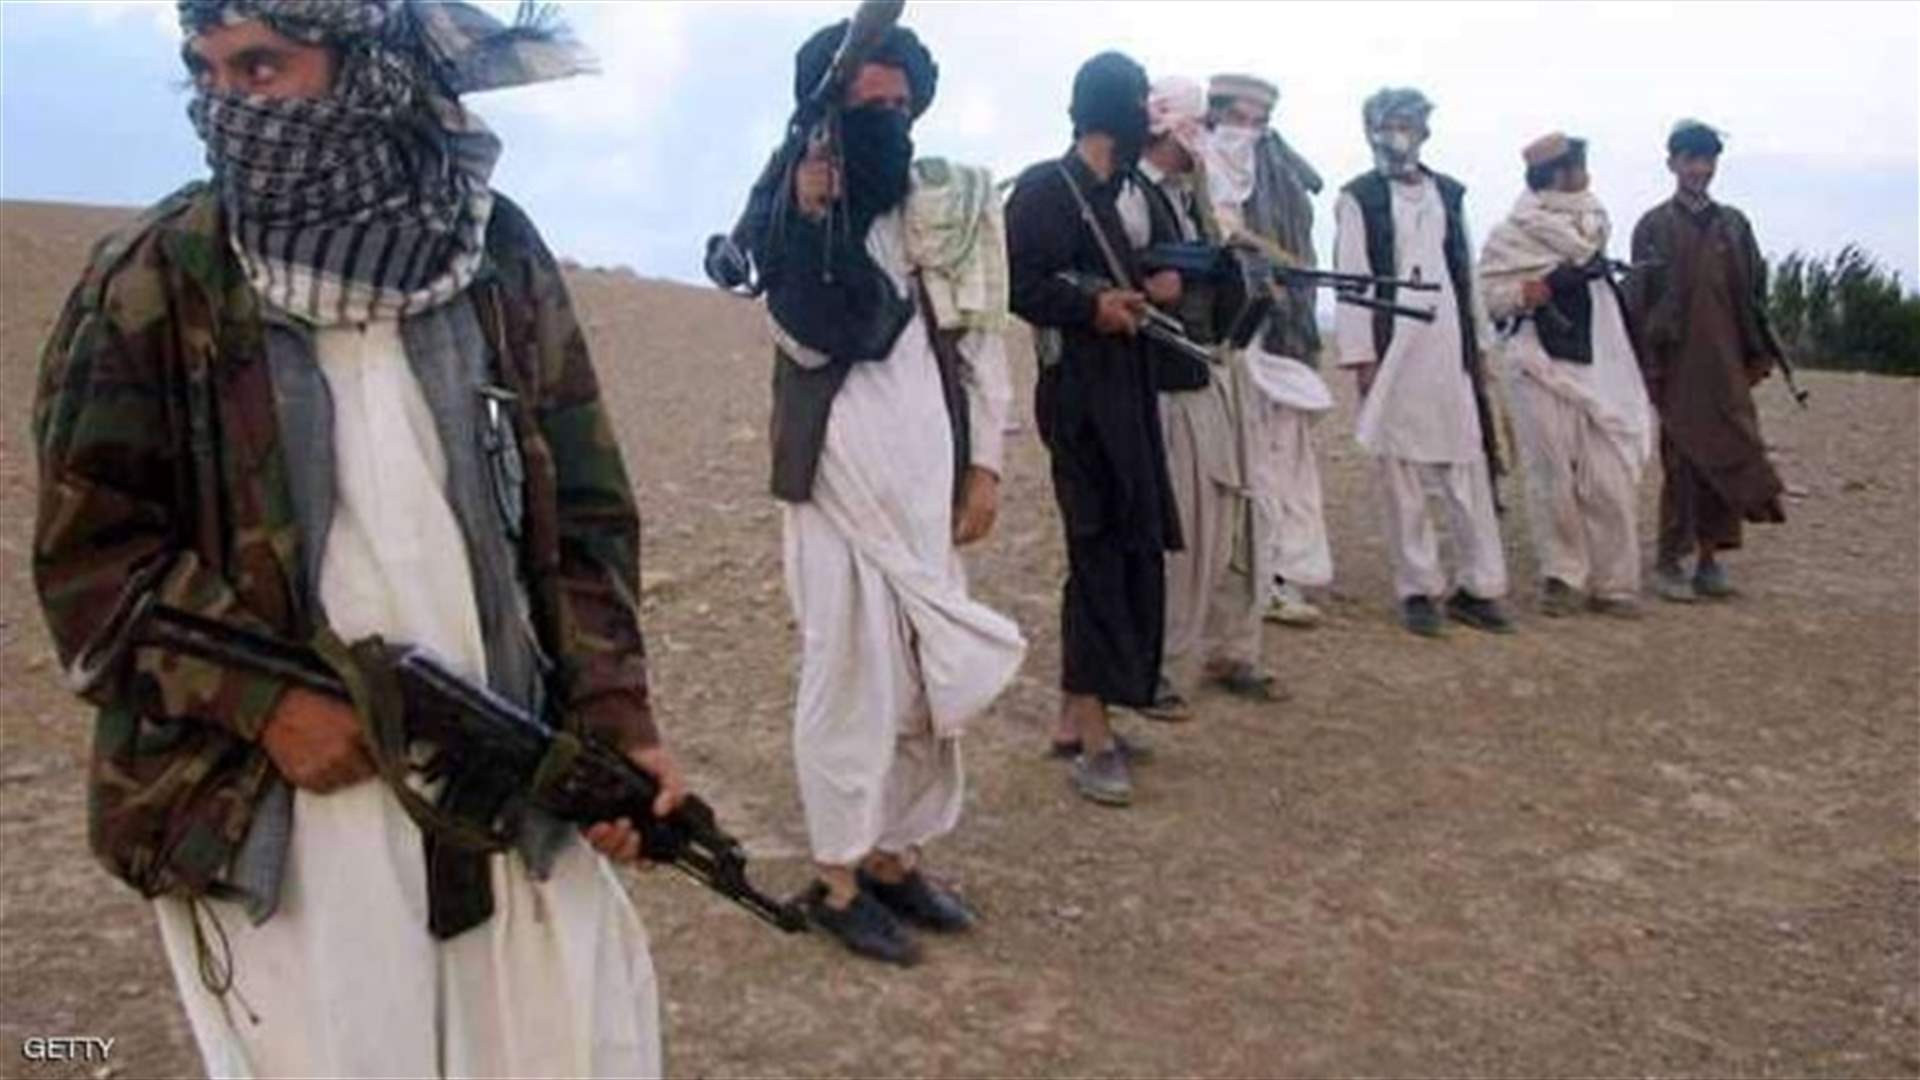 سفارتا أميركا وبريطانيا في أفغانستان تتهمان طالبان بارتكاب جرائم حرب محتملة